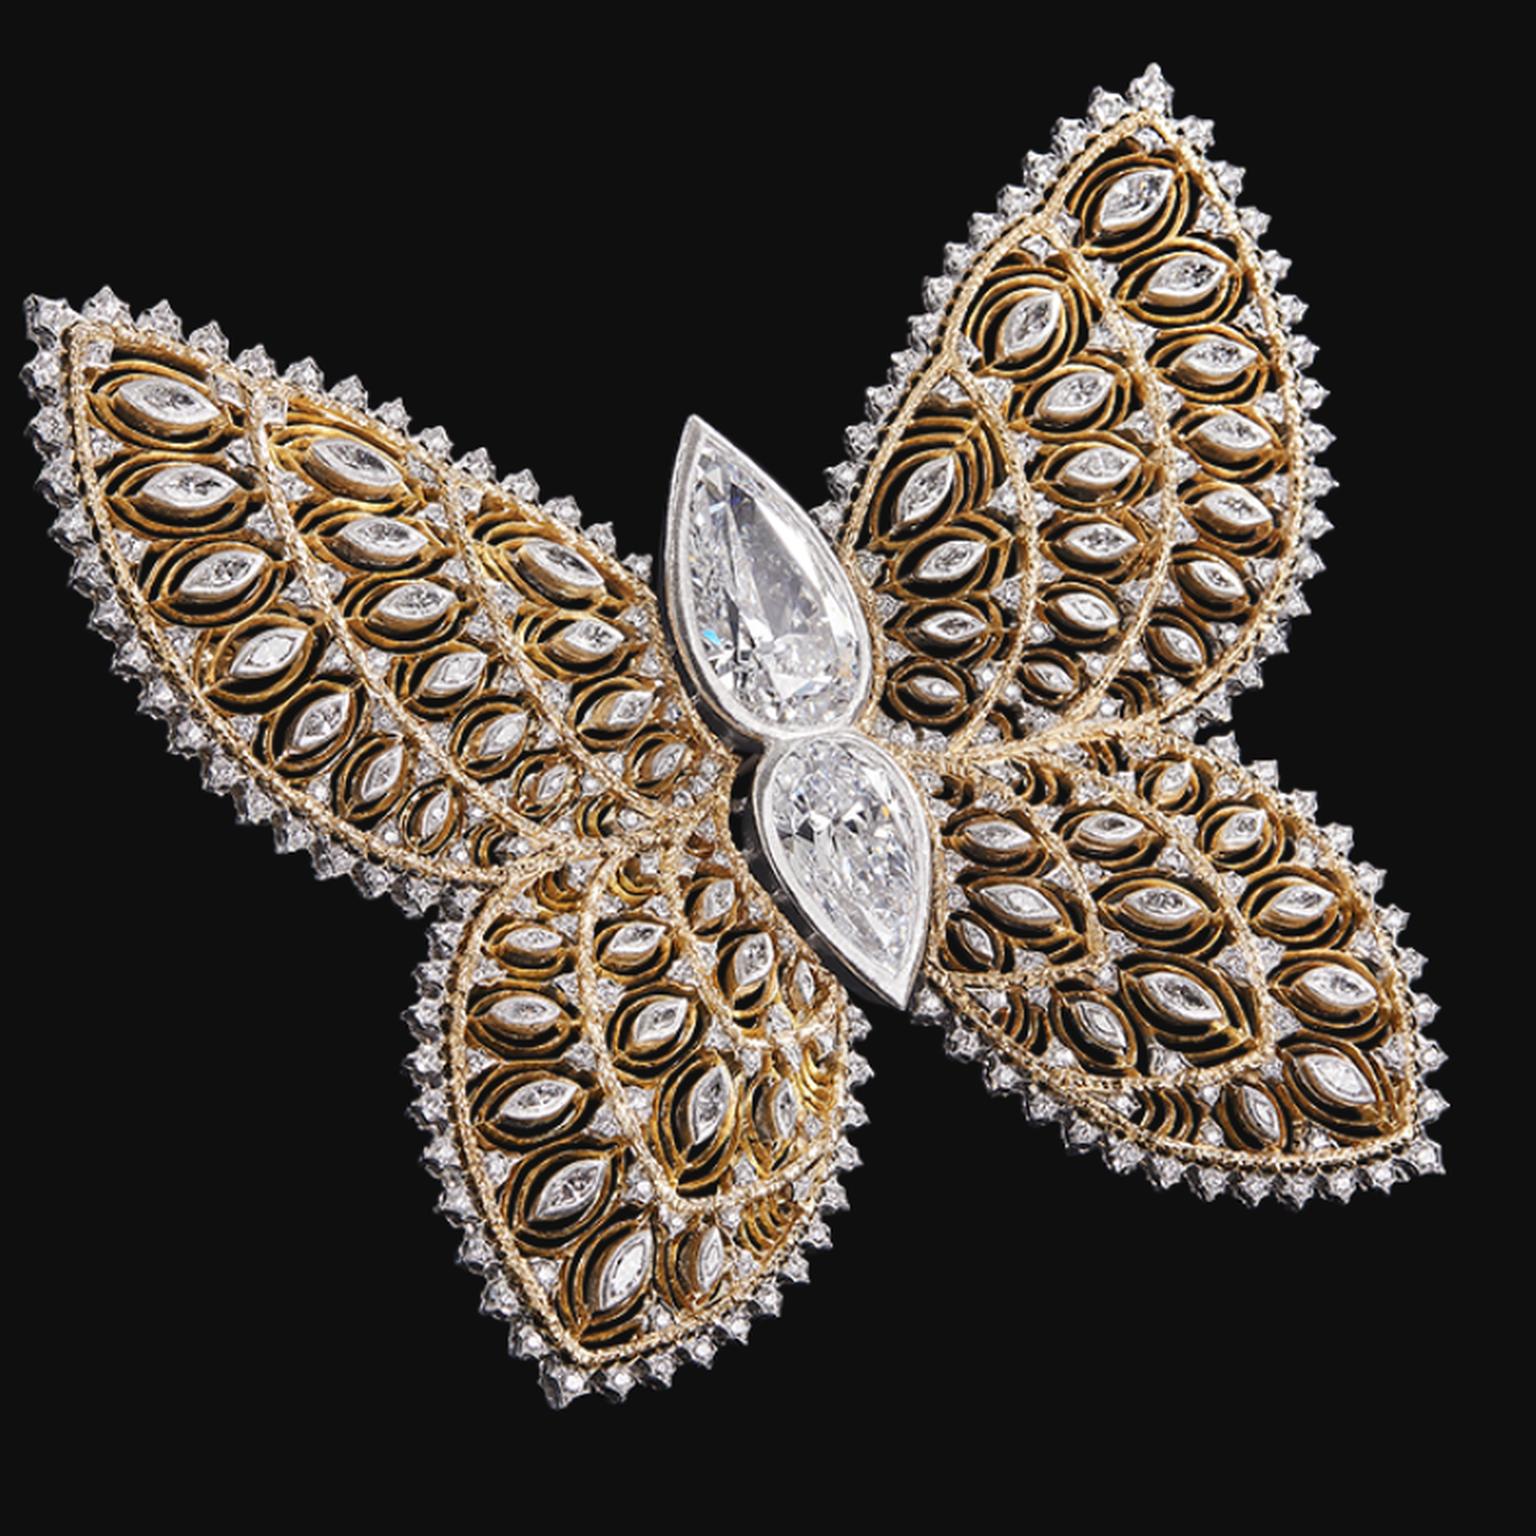 Butterfly brooch by Buccellati